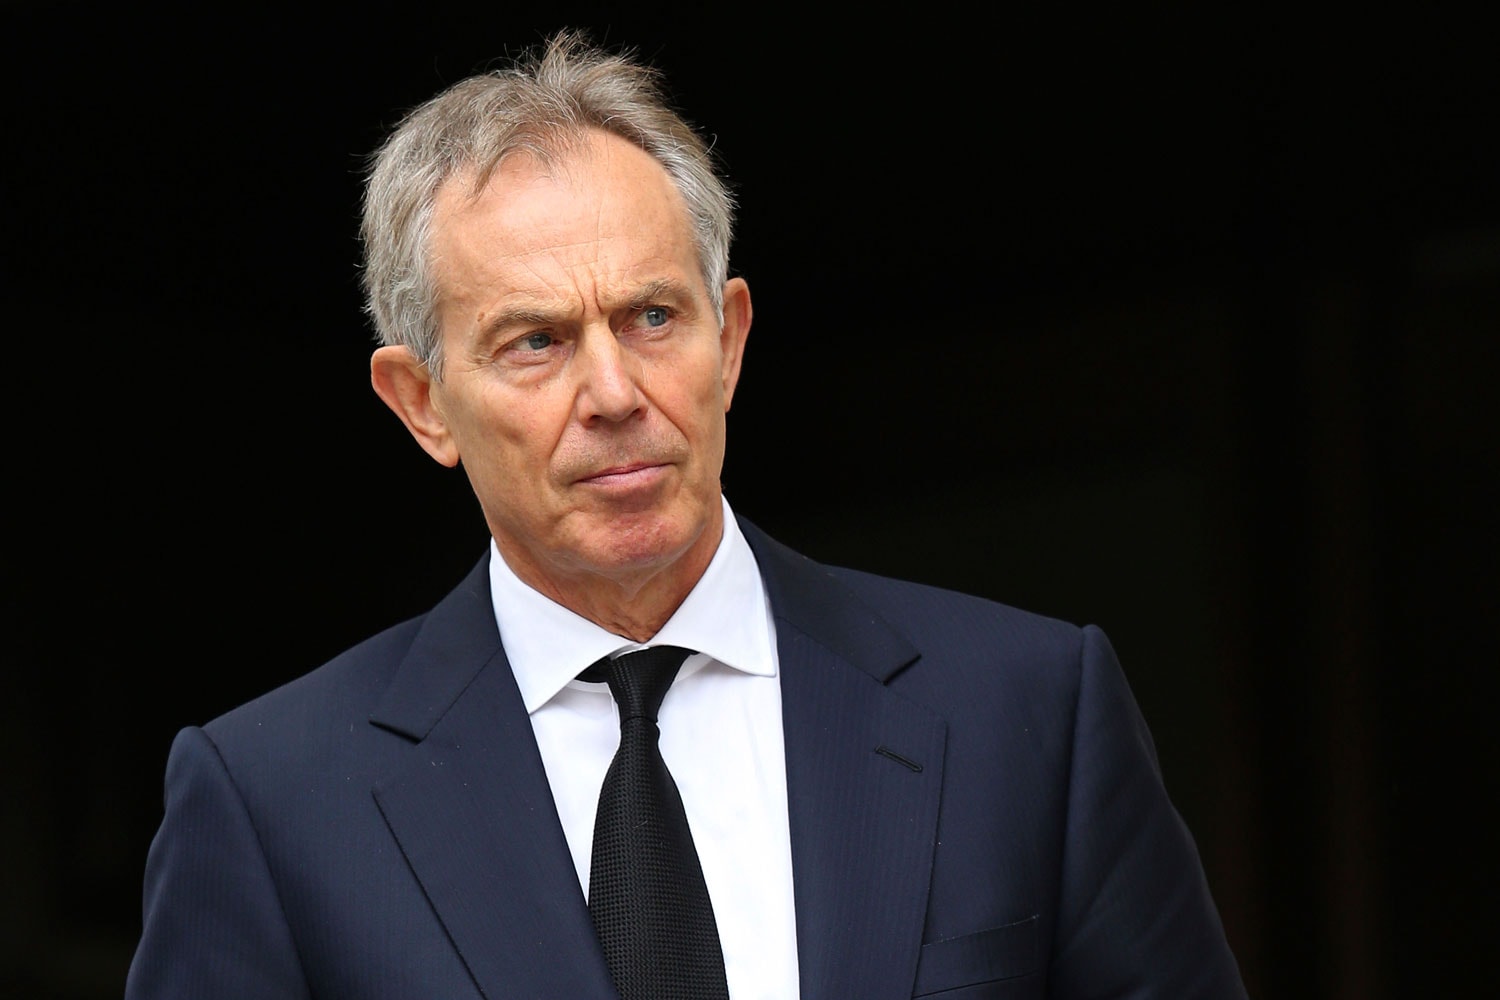 Advertencia de Tony Blair a los gobiernos sobre extremismo religioso